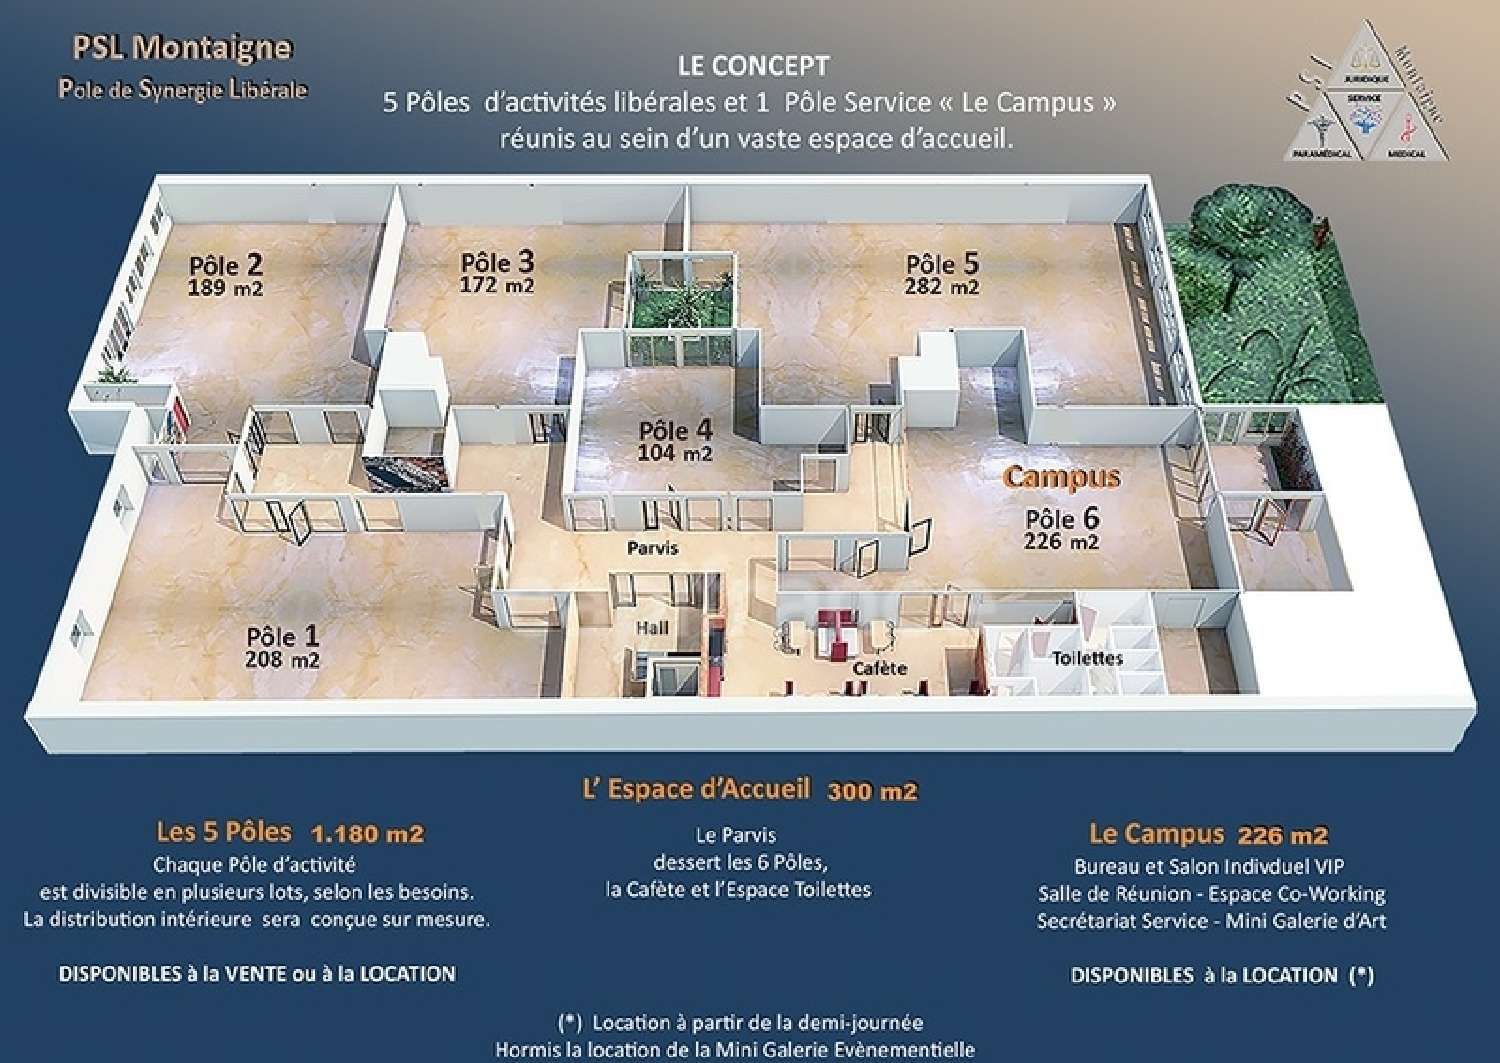  te koop huis Sète Hérault 1